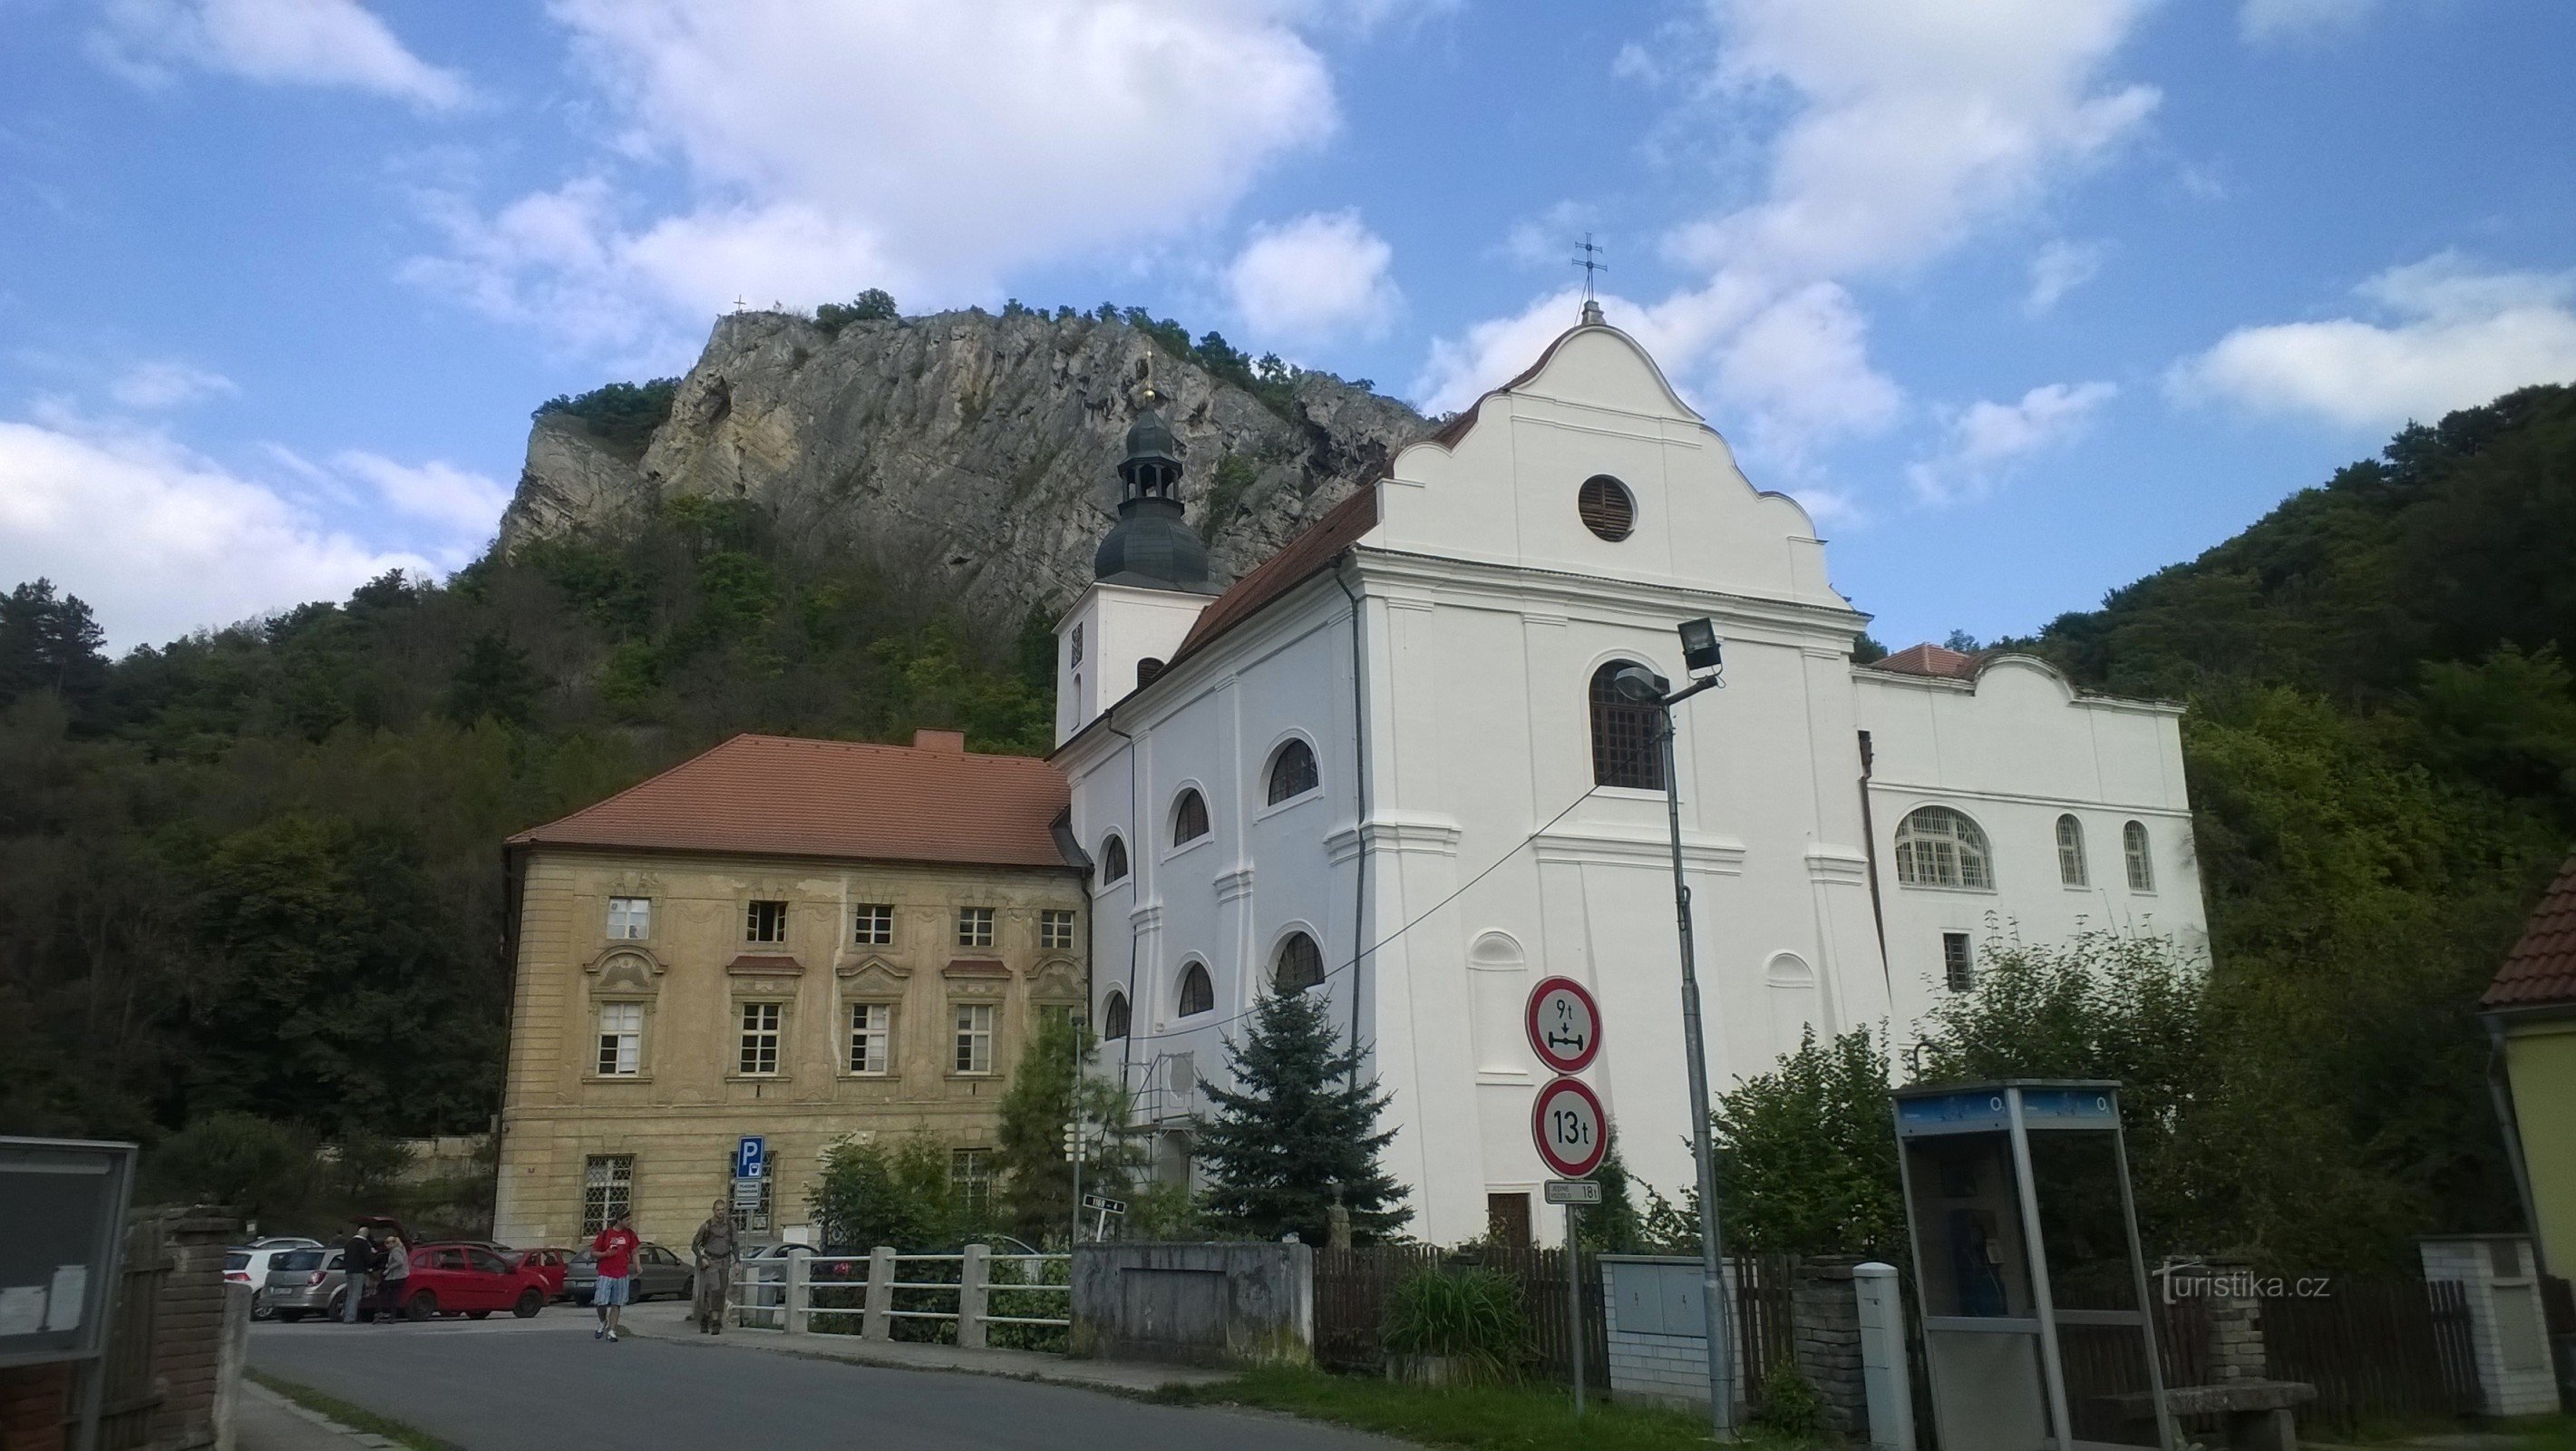 St. Jan pod Skalou - ein schöner Ort im Böhmischen Karst